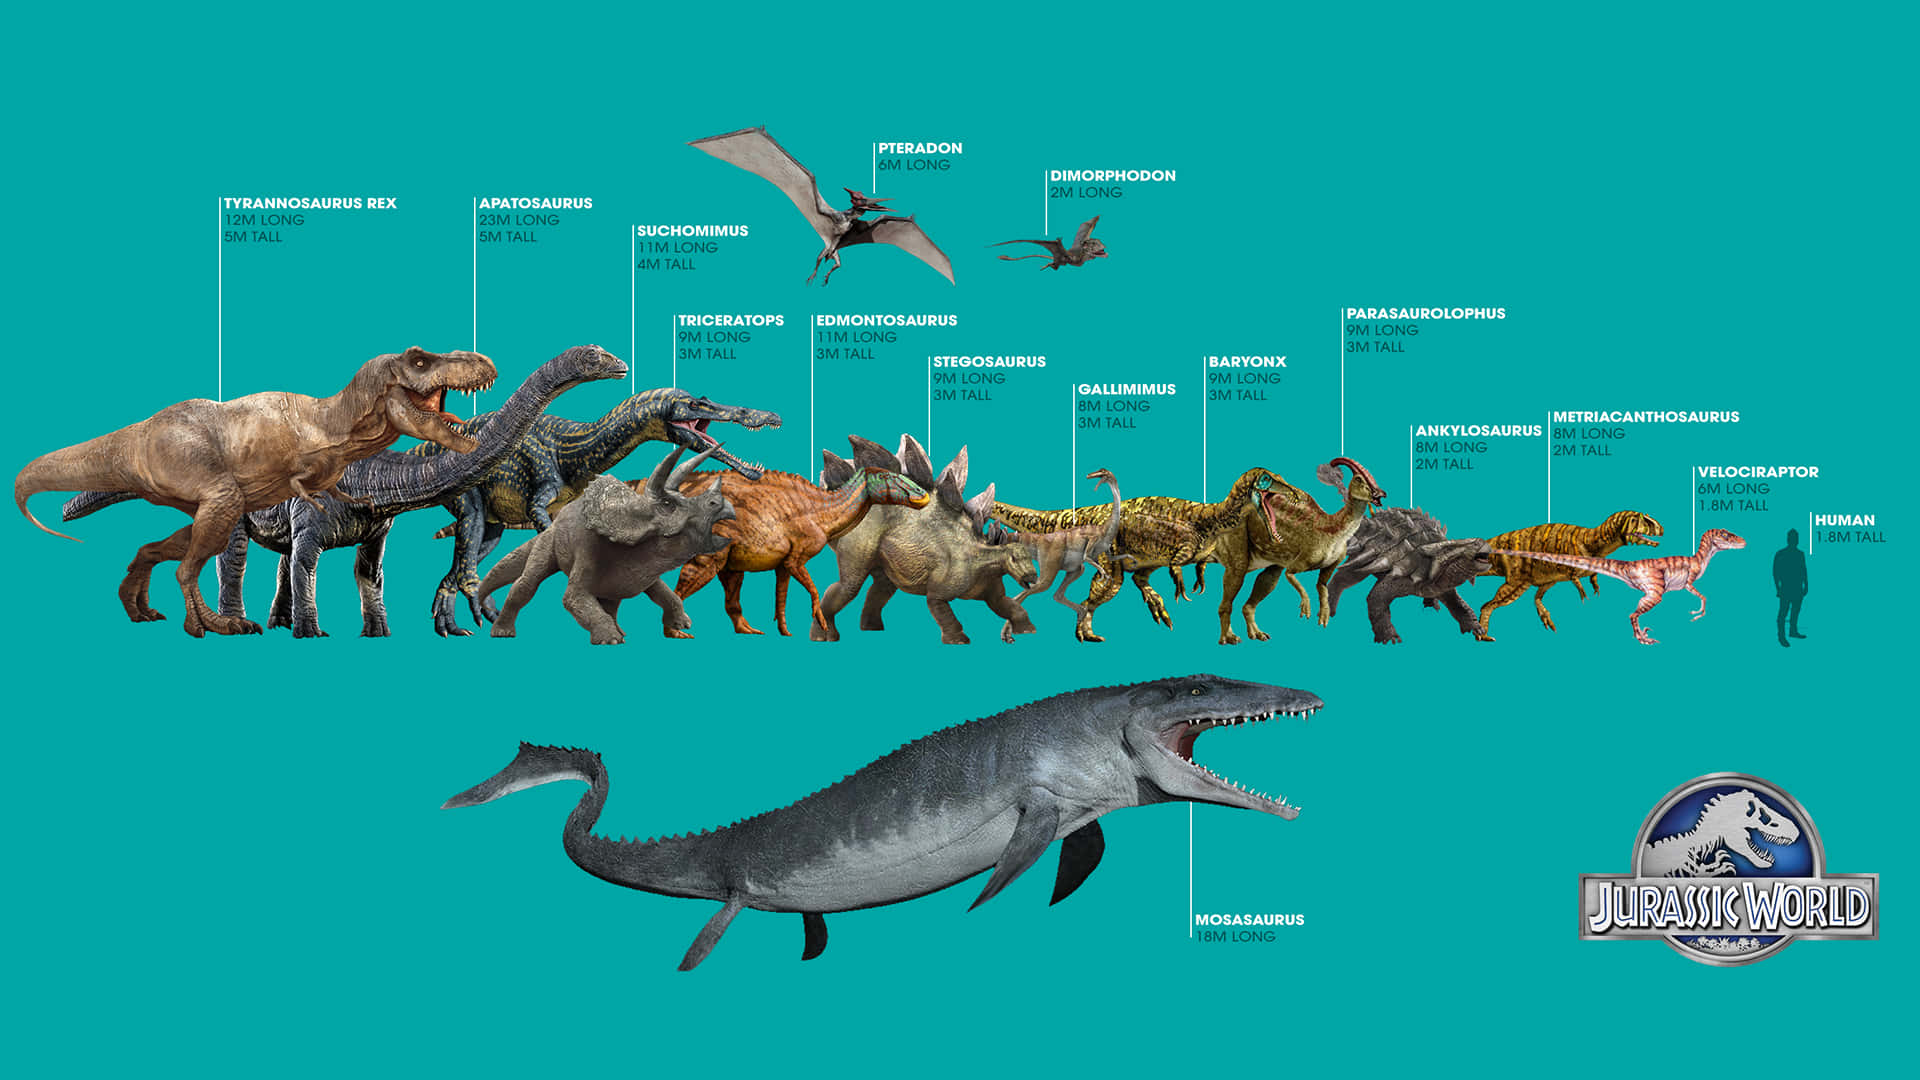 Jurassicworld Dinosaurer - Dinosauriernas Evolution.